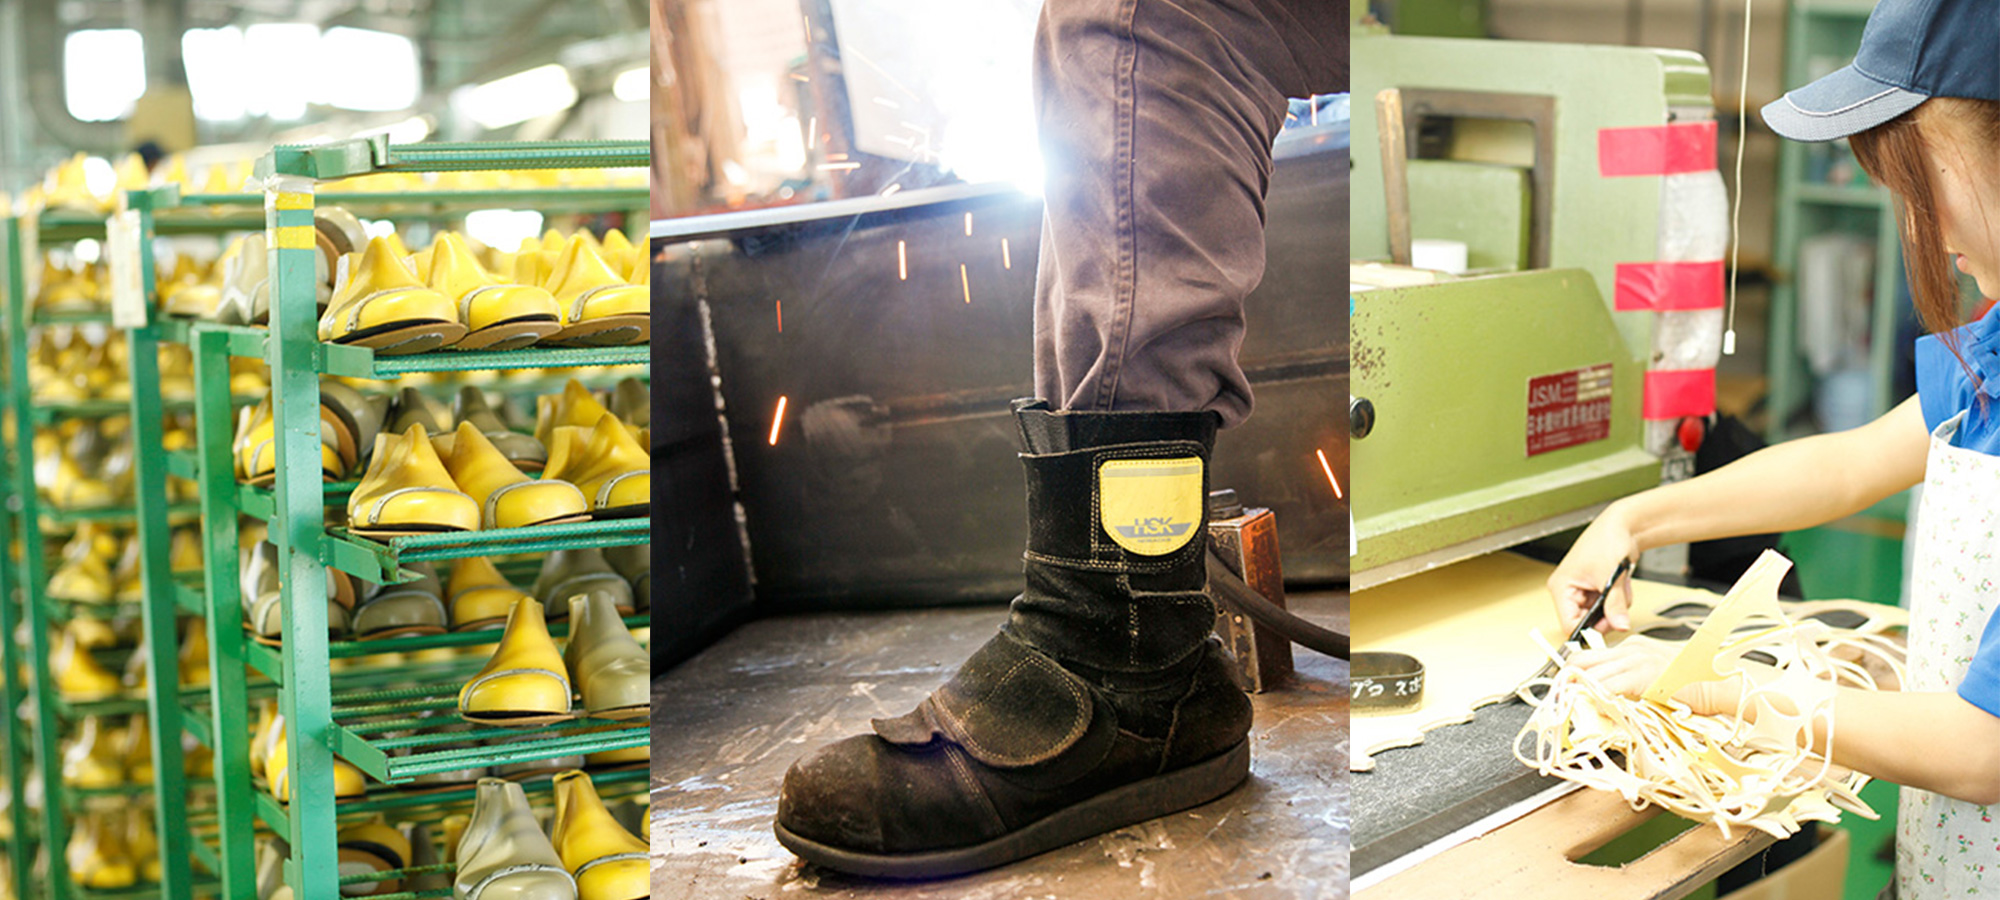 株式会社ノサックス | 1924年、広島で初めて作業靴を作りそれから